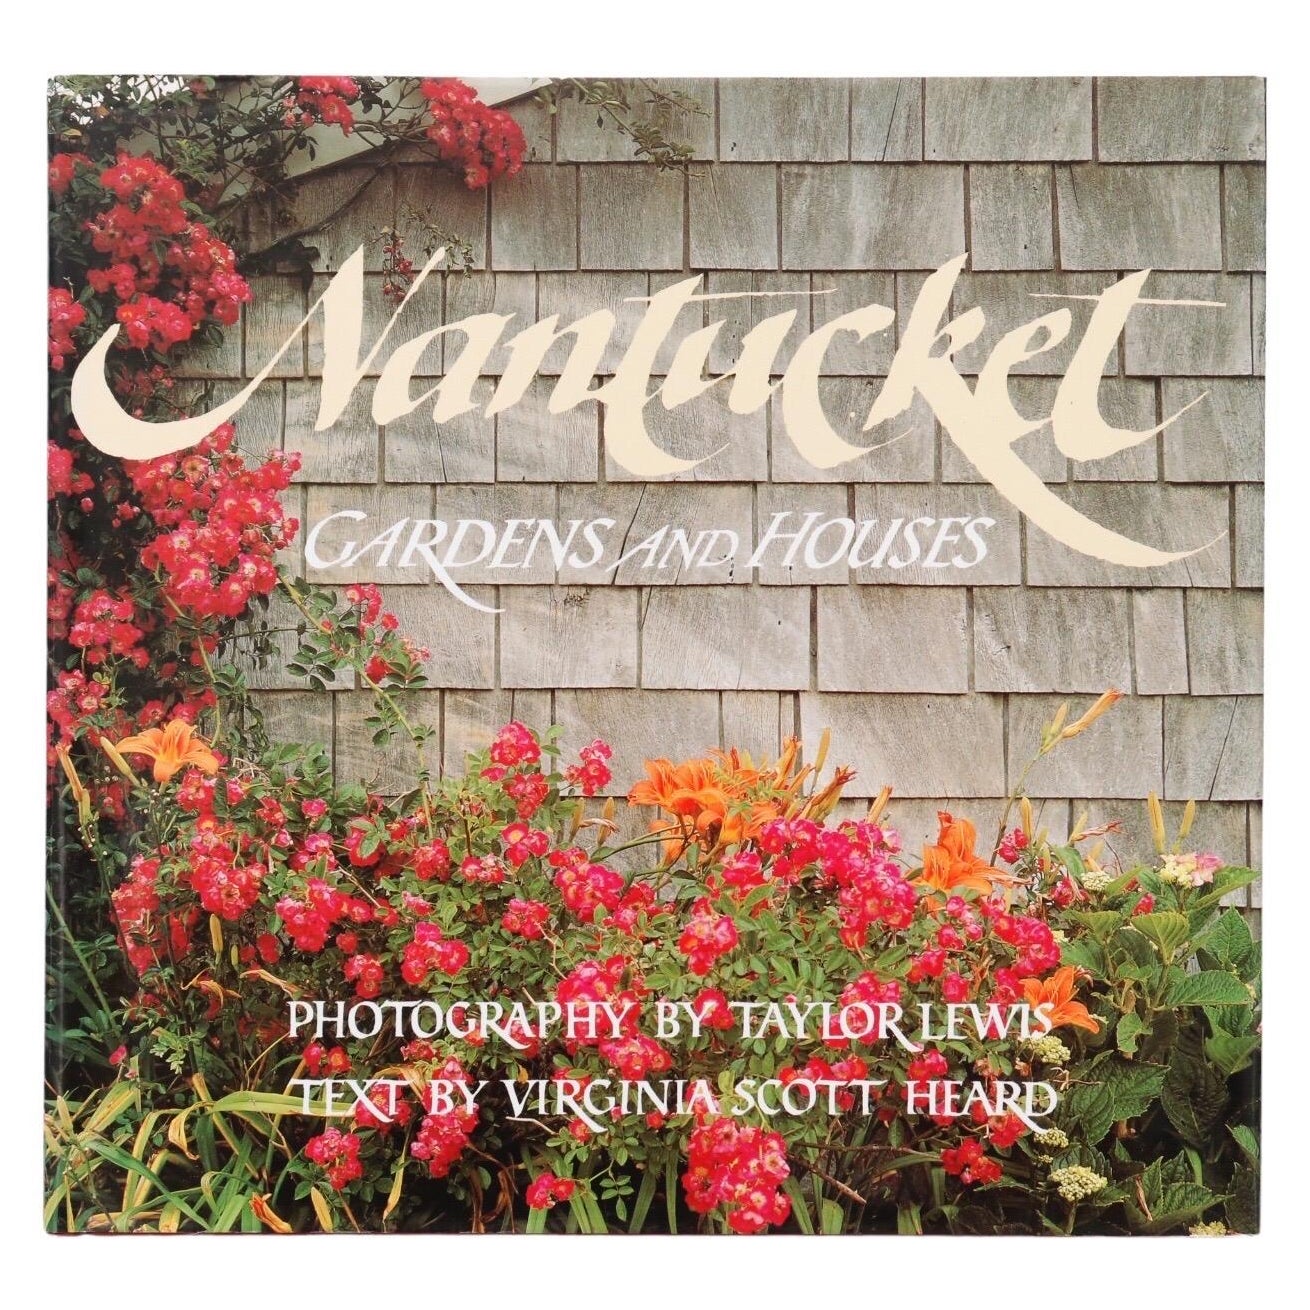 Nantucket-Garten und -Häuser